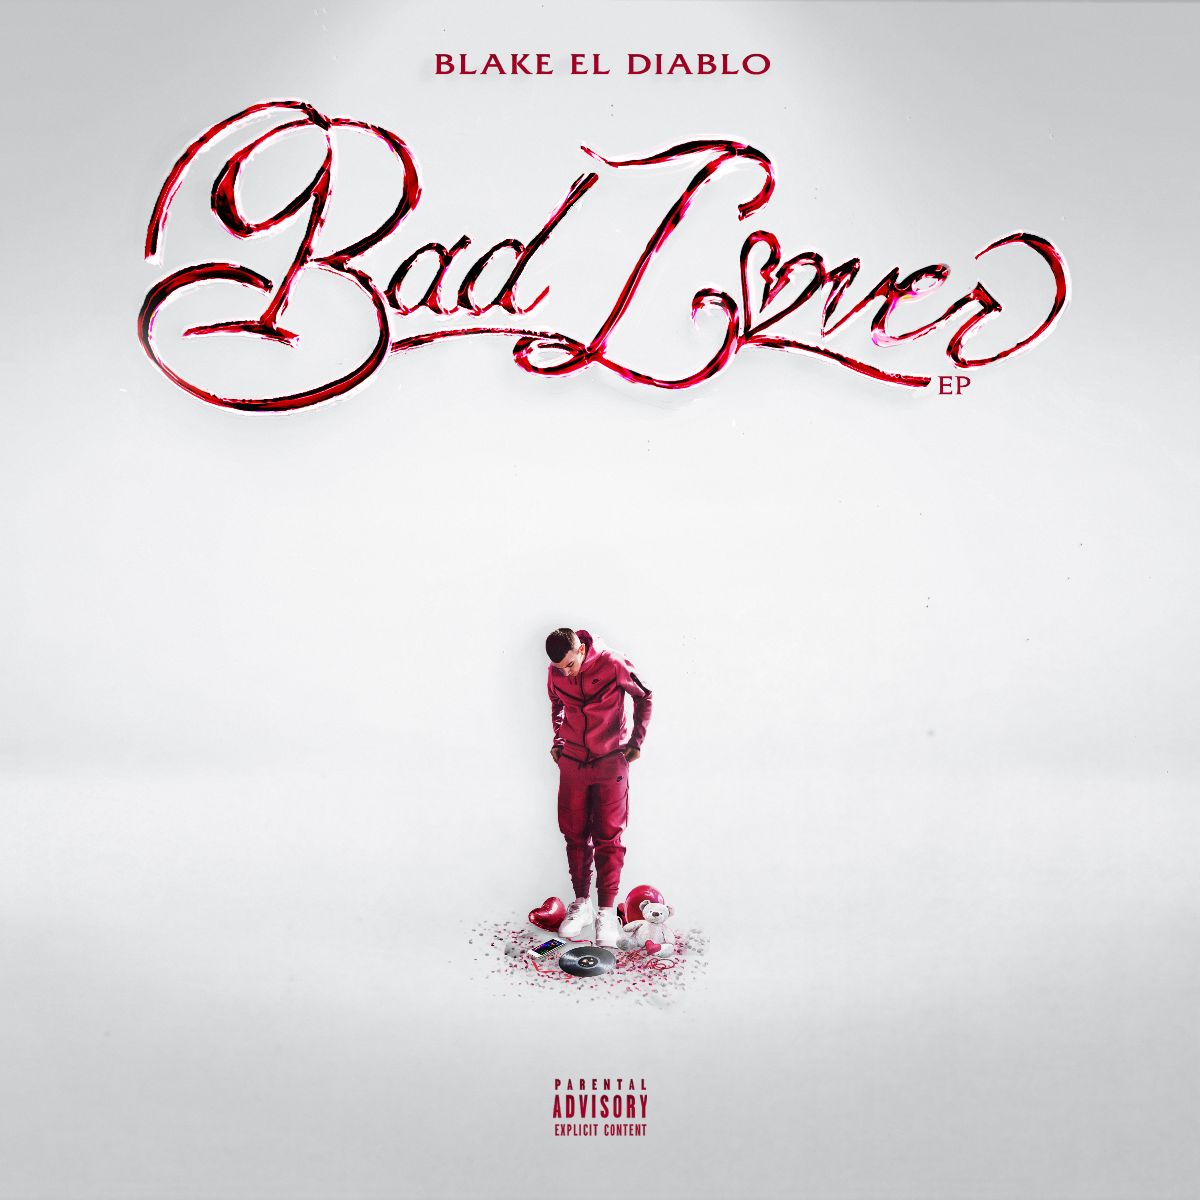 Blake el Diablo: “BAD LOVER” è il nuovo EP